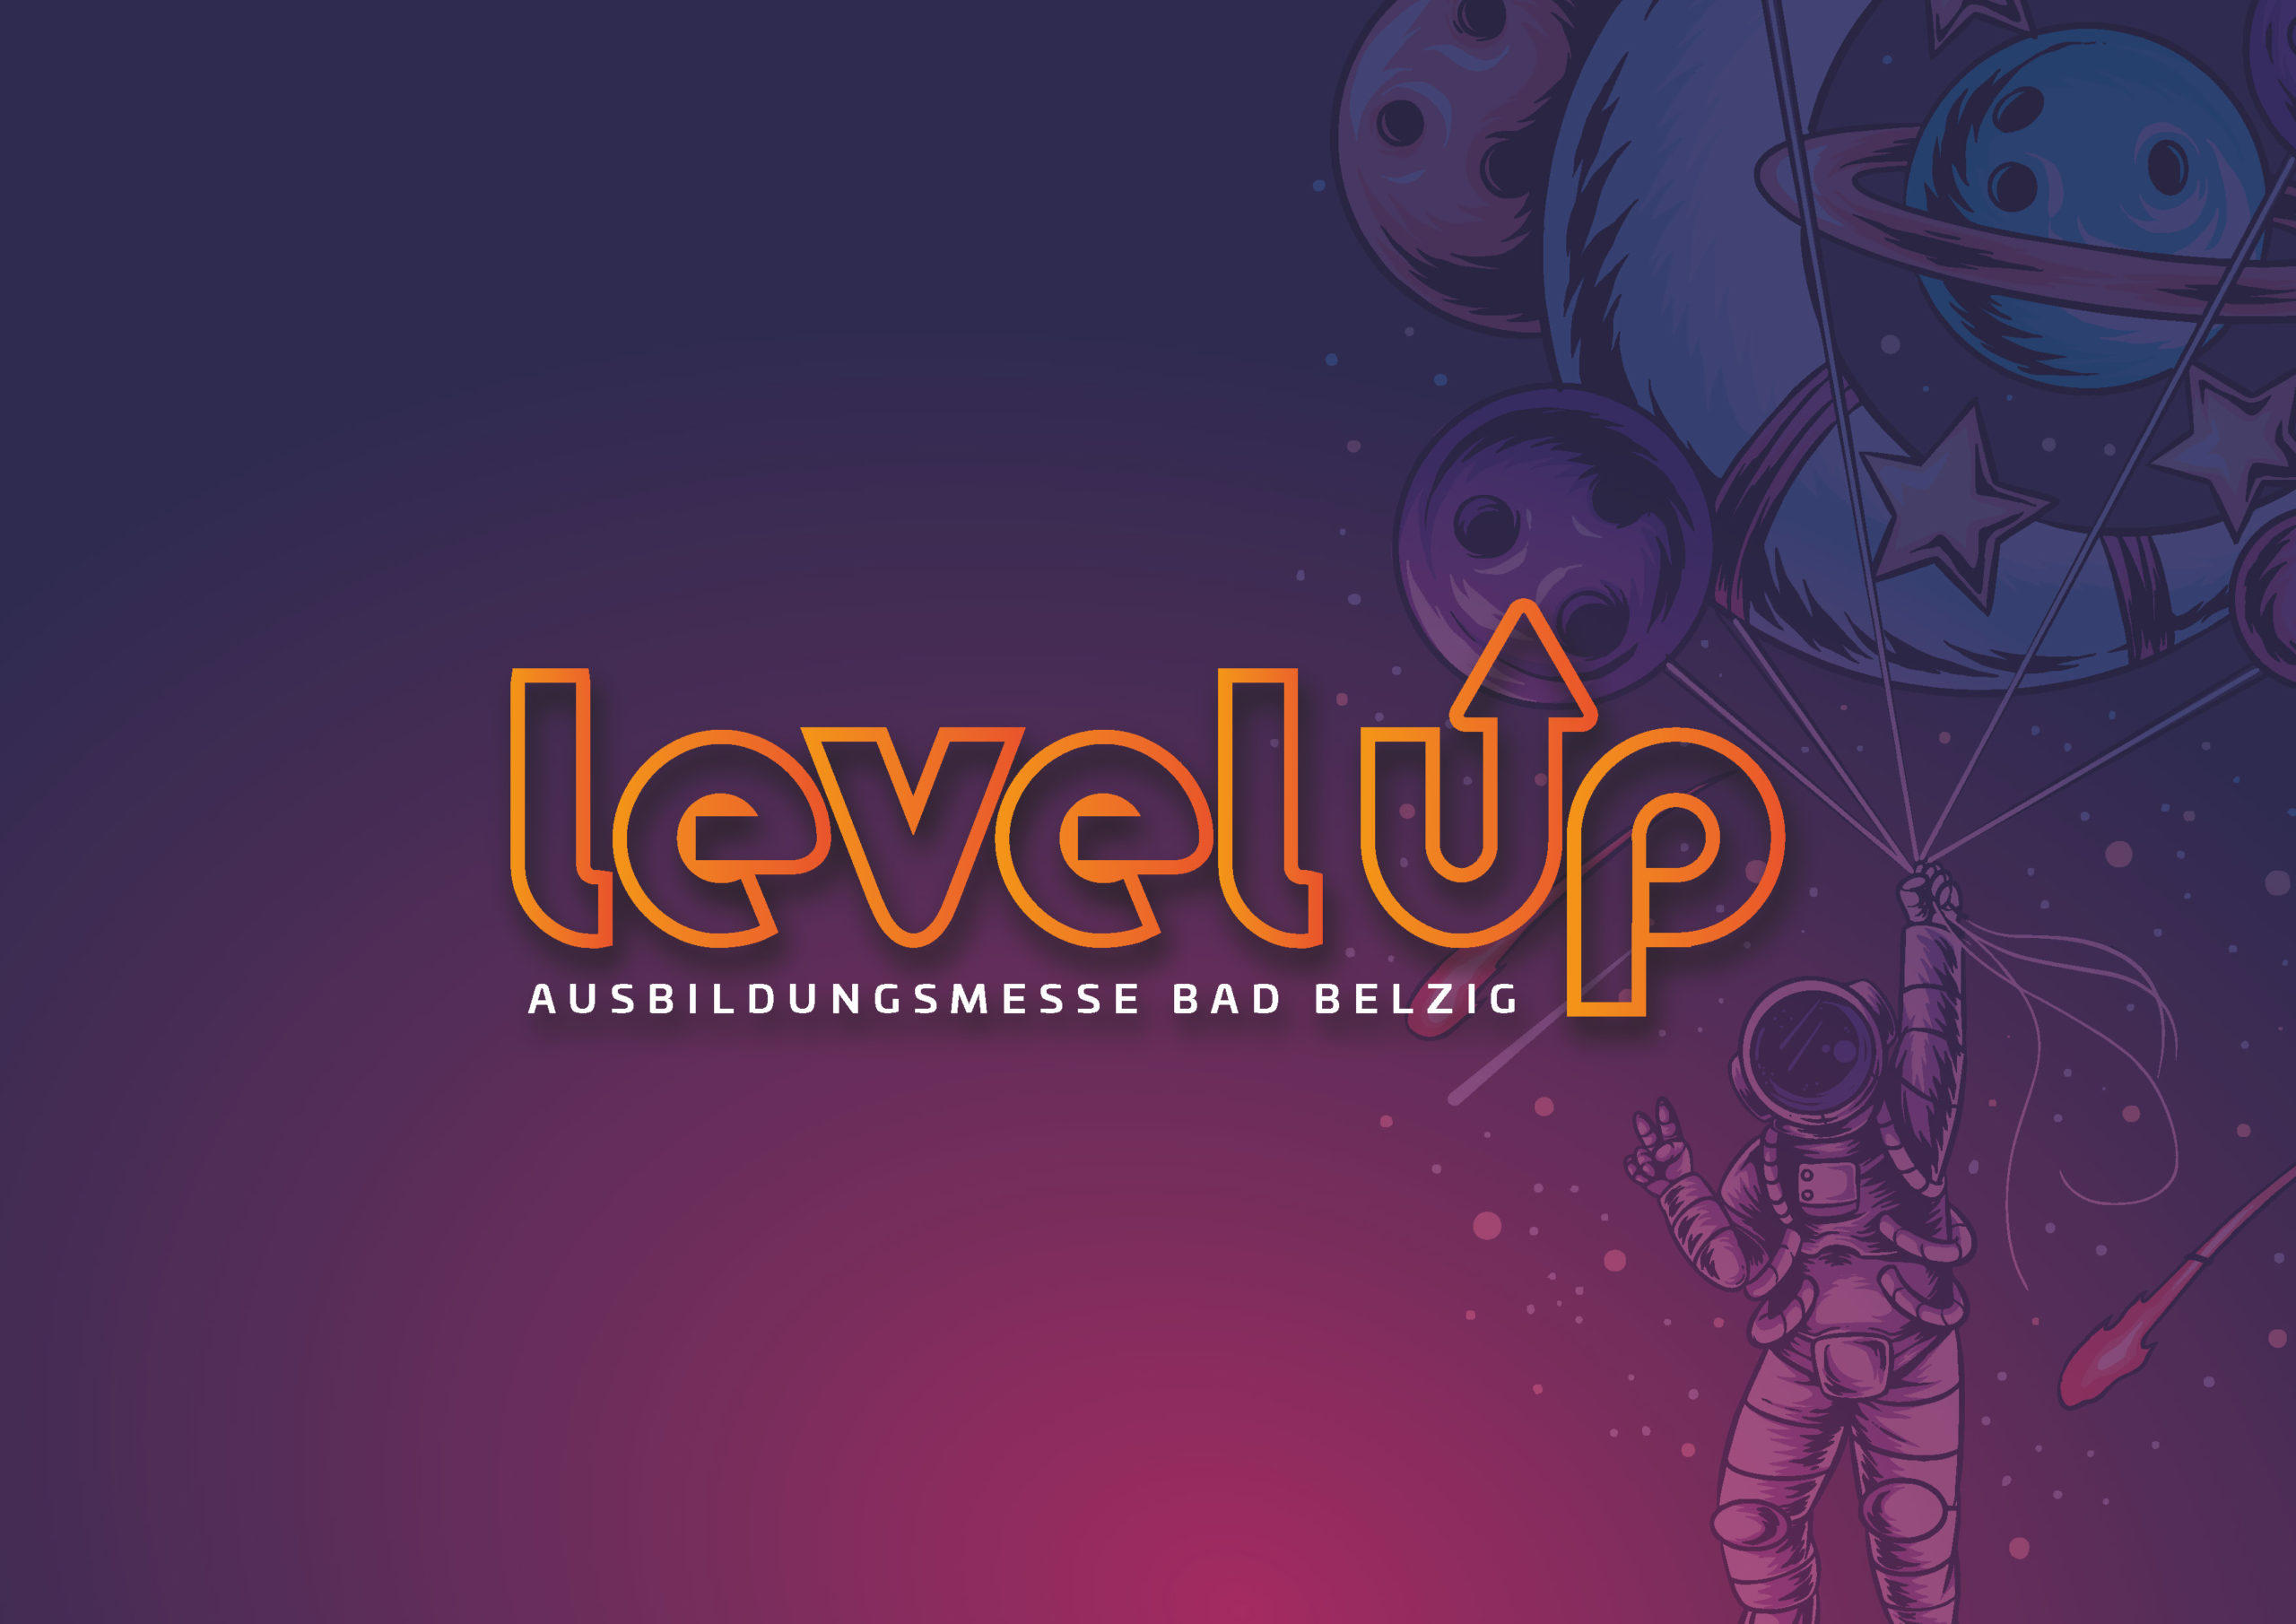 Ausbildungsmesse Bad Belzig – Level Up